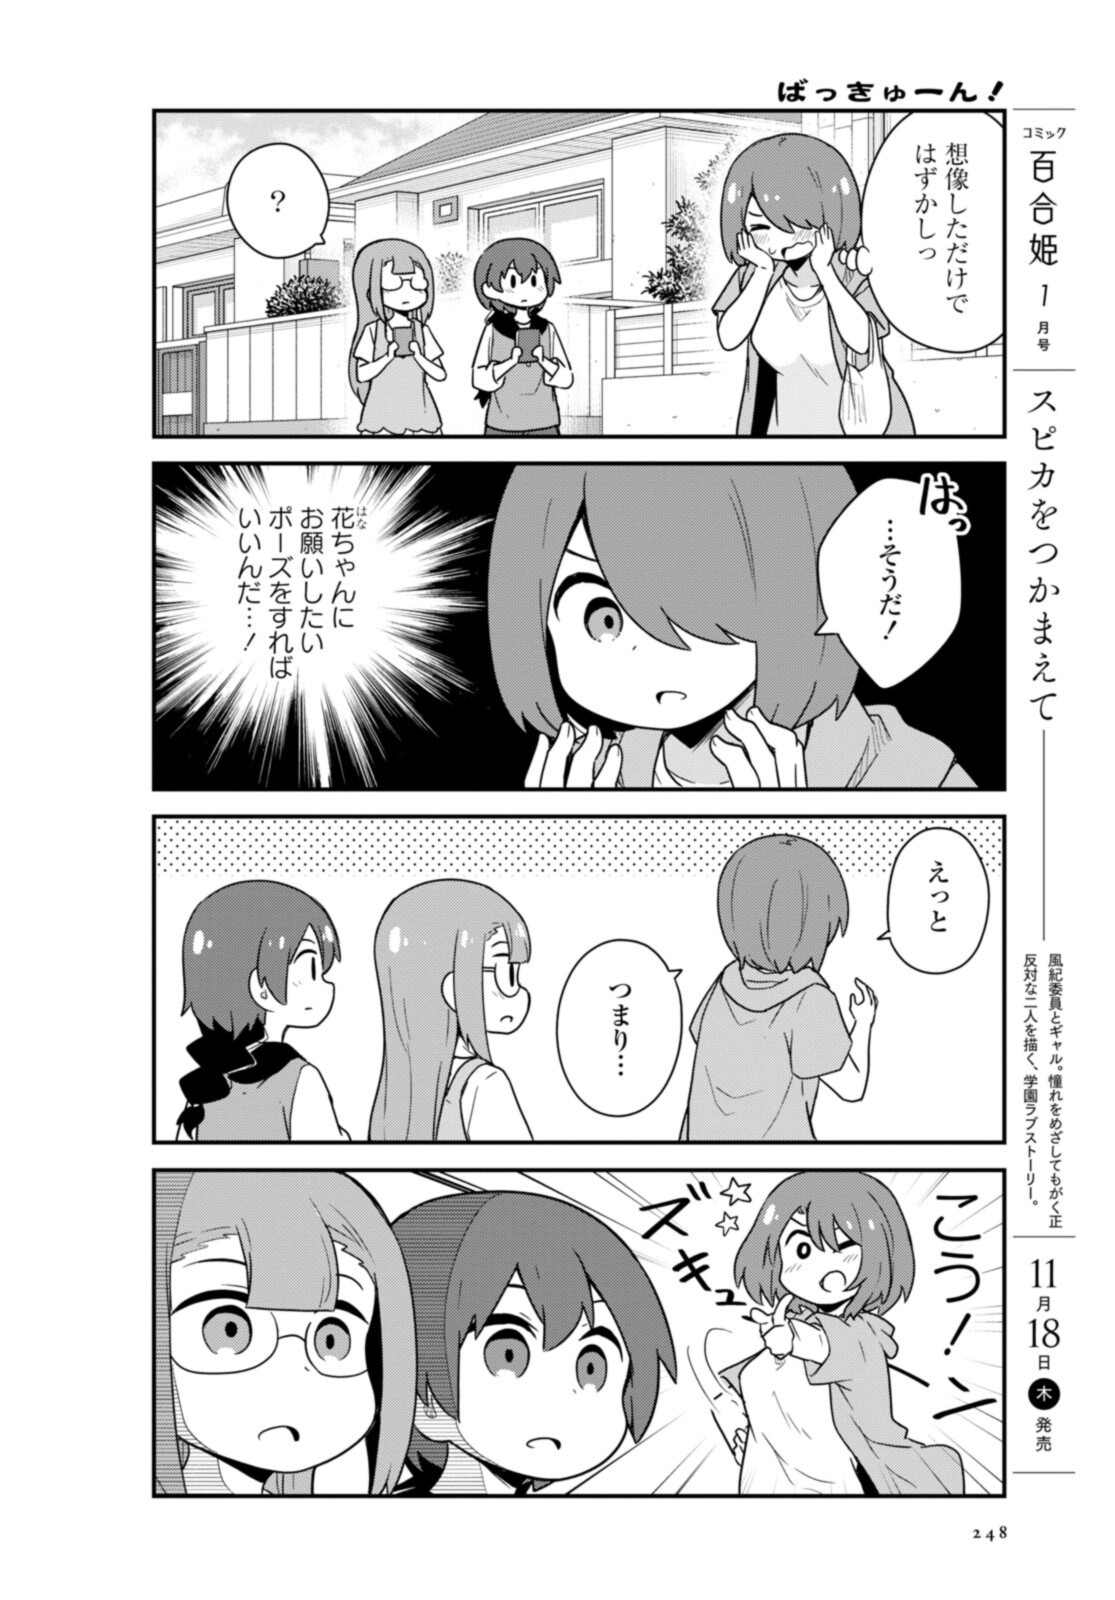 Watashi ni Tenshi ga Maiorita! - Chapter 89 - Page 10